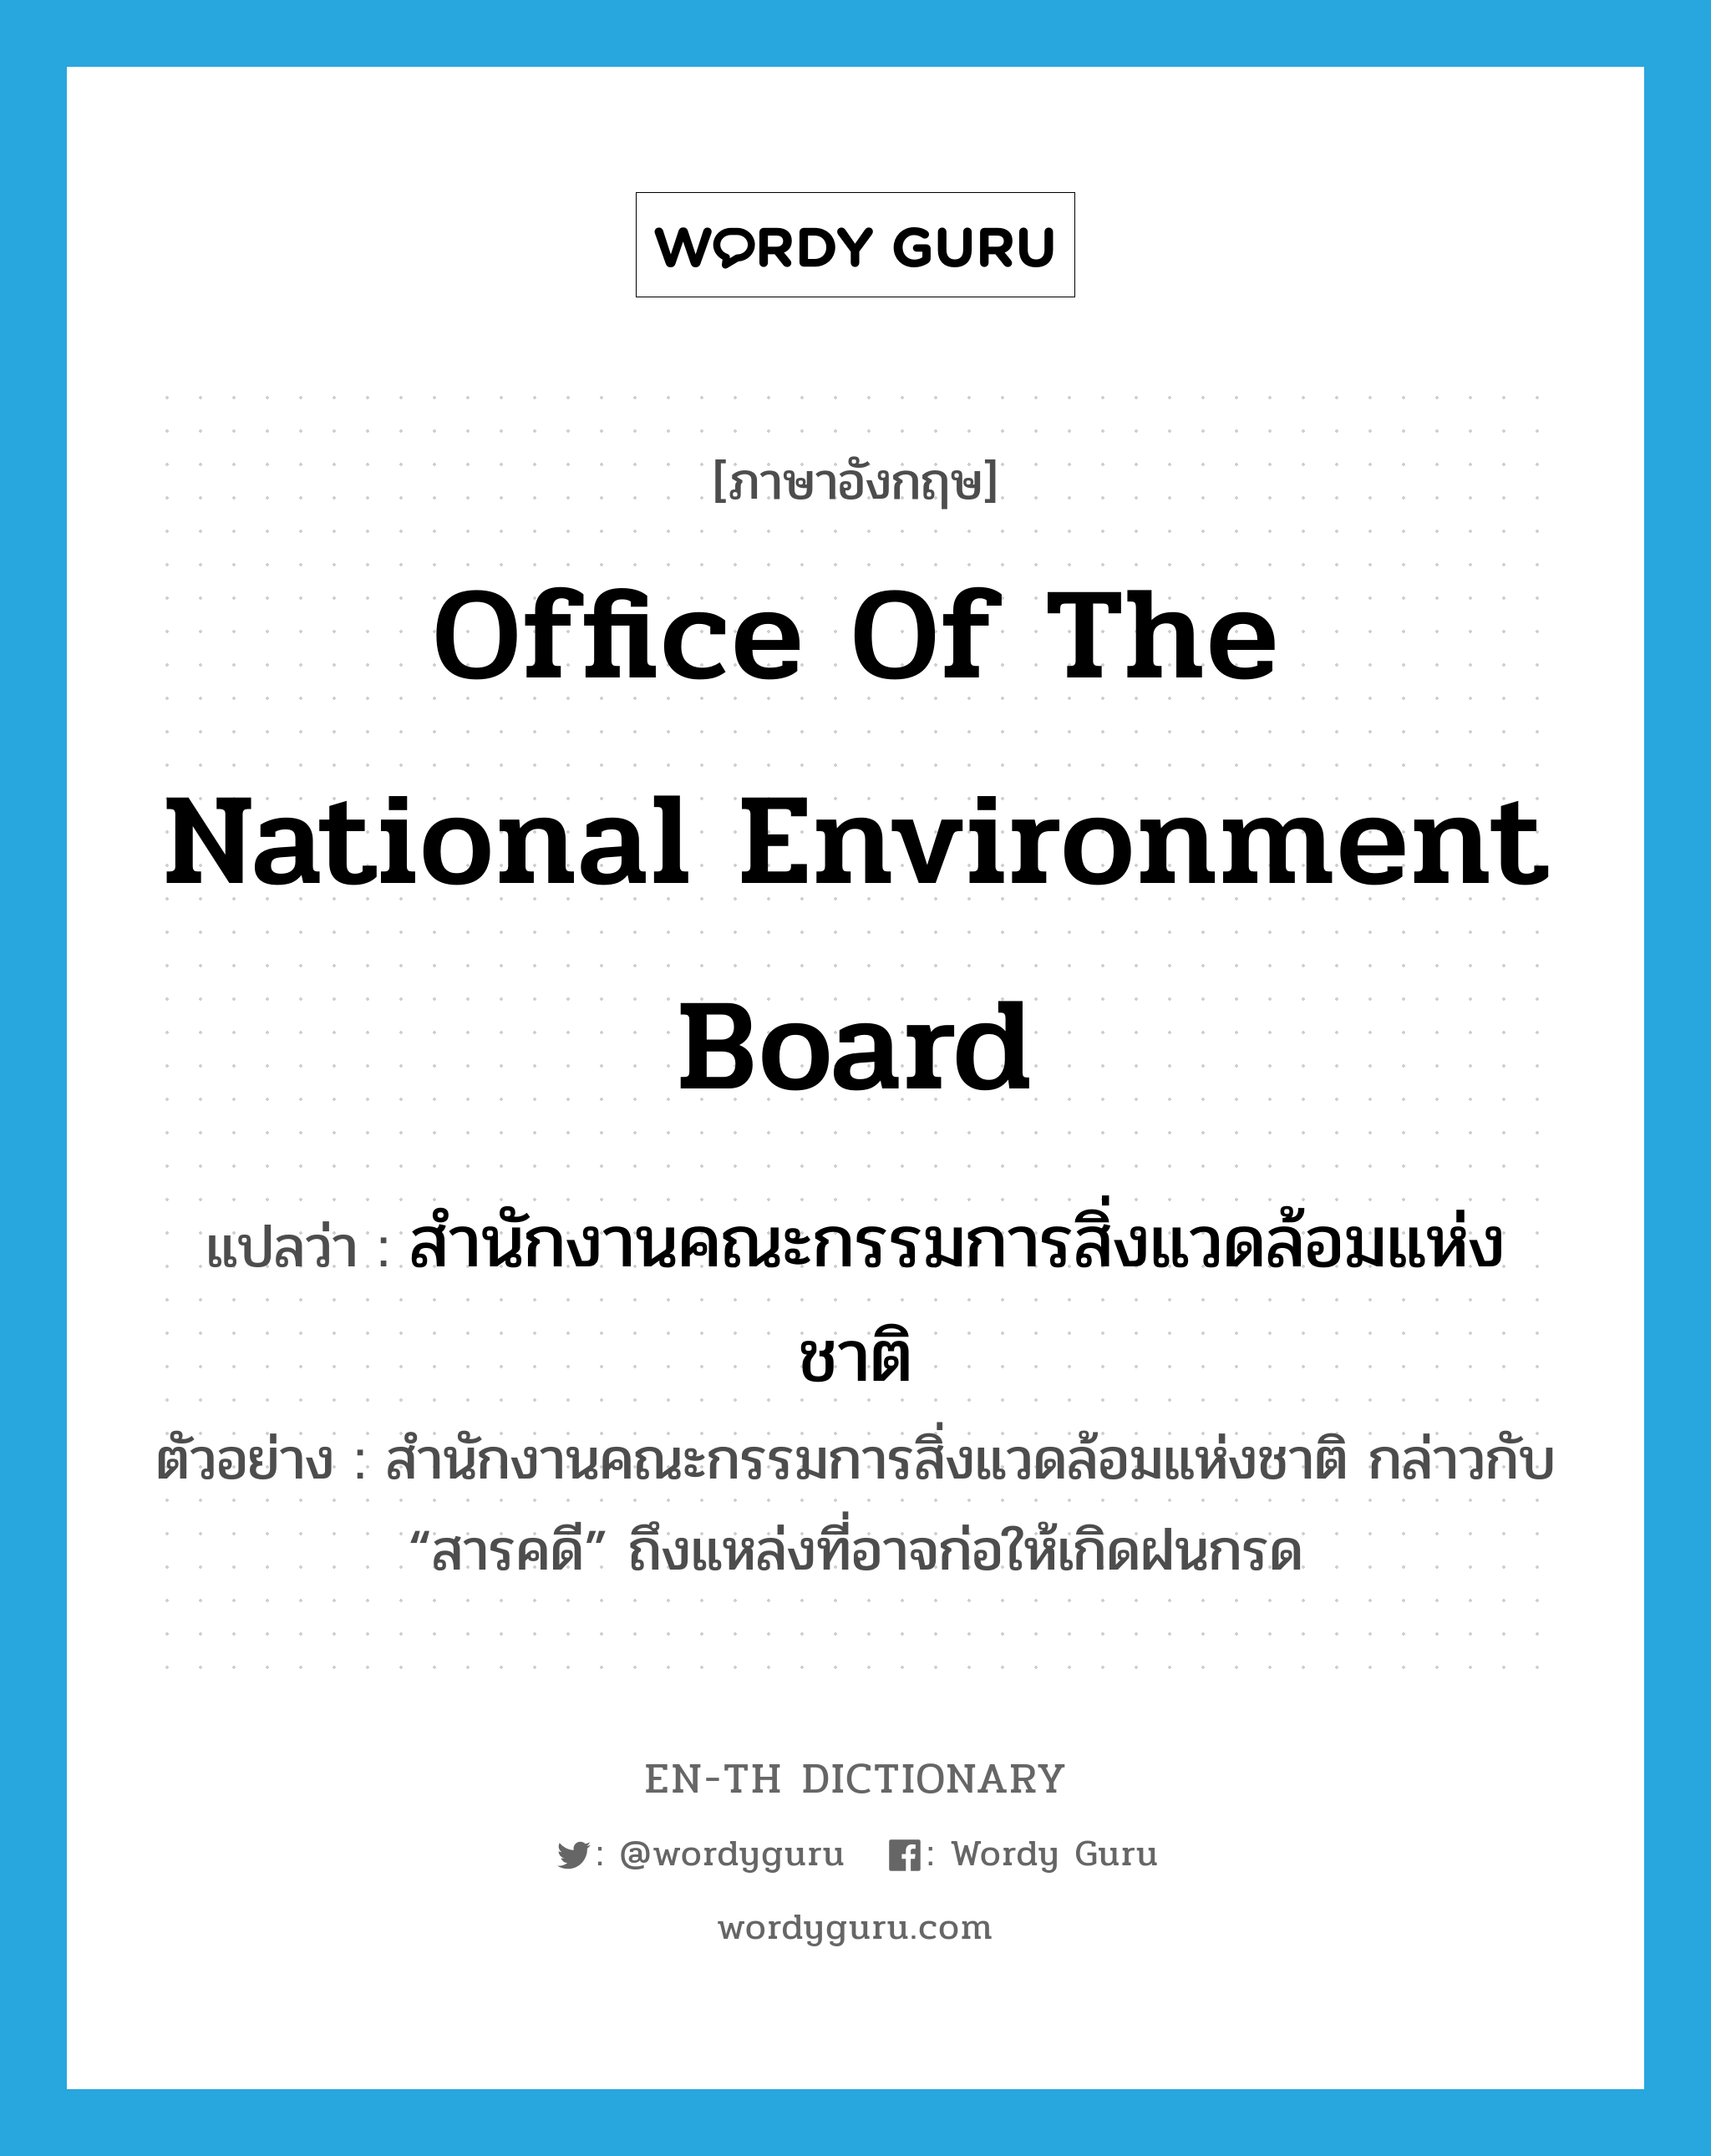 Office of the National Environment Board แปลว่า?, คำศัพท์ภาษาอังกฤษ Office of the National Environment Board แปลว่า สำนักงานคณะกรรมการสิ่งแวดล้อมแห่งชาติ ประเภท N ตัวอย่าง สำนักงานคณะกรรมการสิ่งแวดล้อมแห่งชาติ กล่าวกับ “สารคดี” ถึงแหล่งที่อาจก่อให้เกิดฝนกรด หมวด N